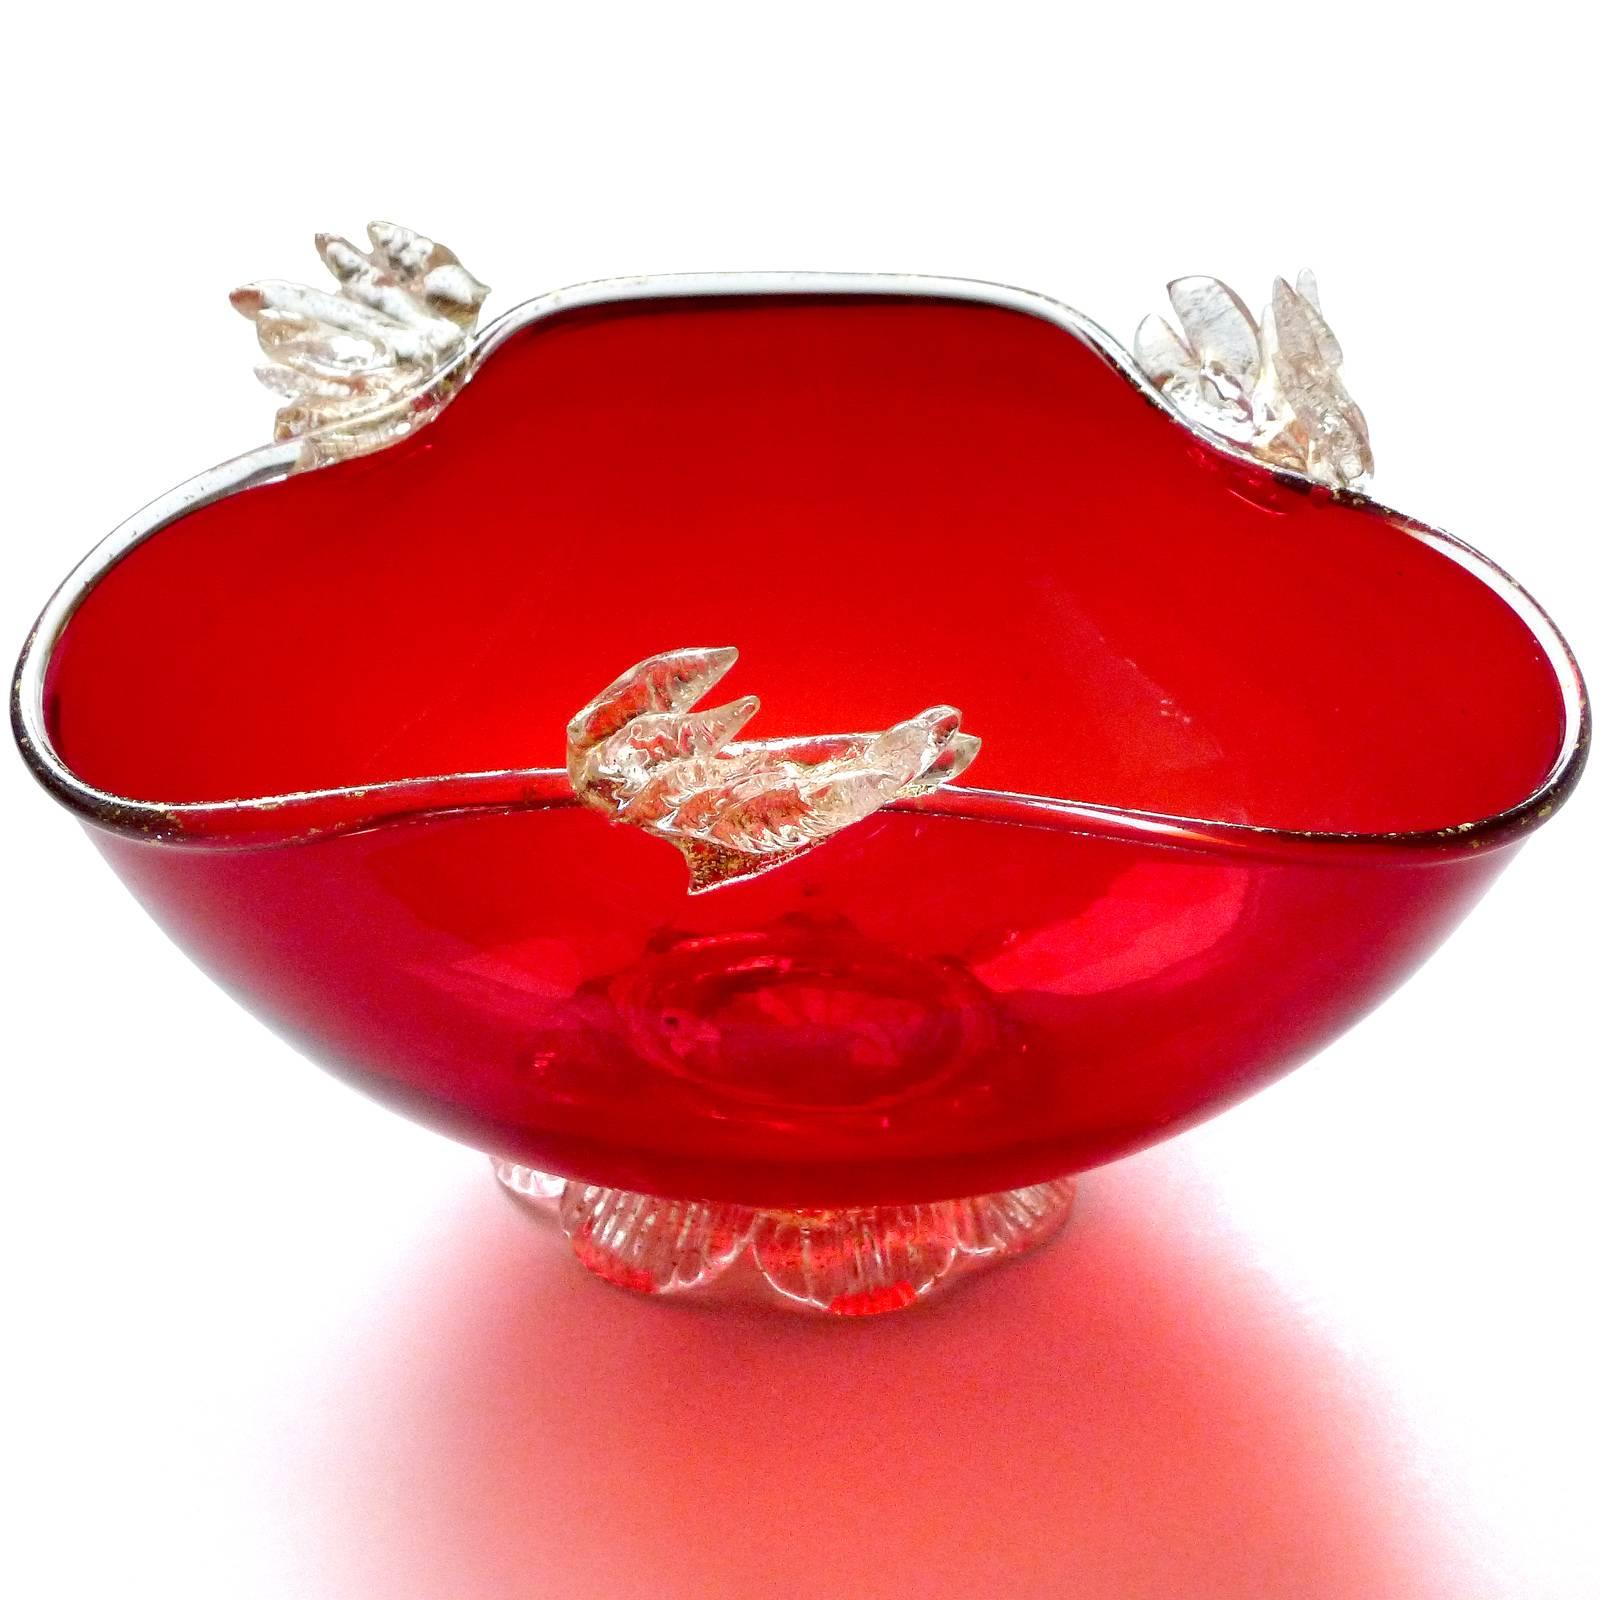 Magnifique bol et plat à bonbons en verre soufflé à la main de Murano, rouge et feuilles d'or appliquées. Créé dans le style vénitien, datant des années 1930-1940. Le plat a un pied appliqué, et une feuille d'or tout le long du bord. Peut être